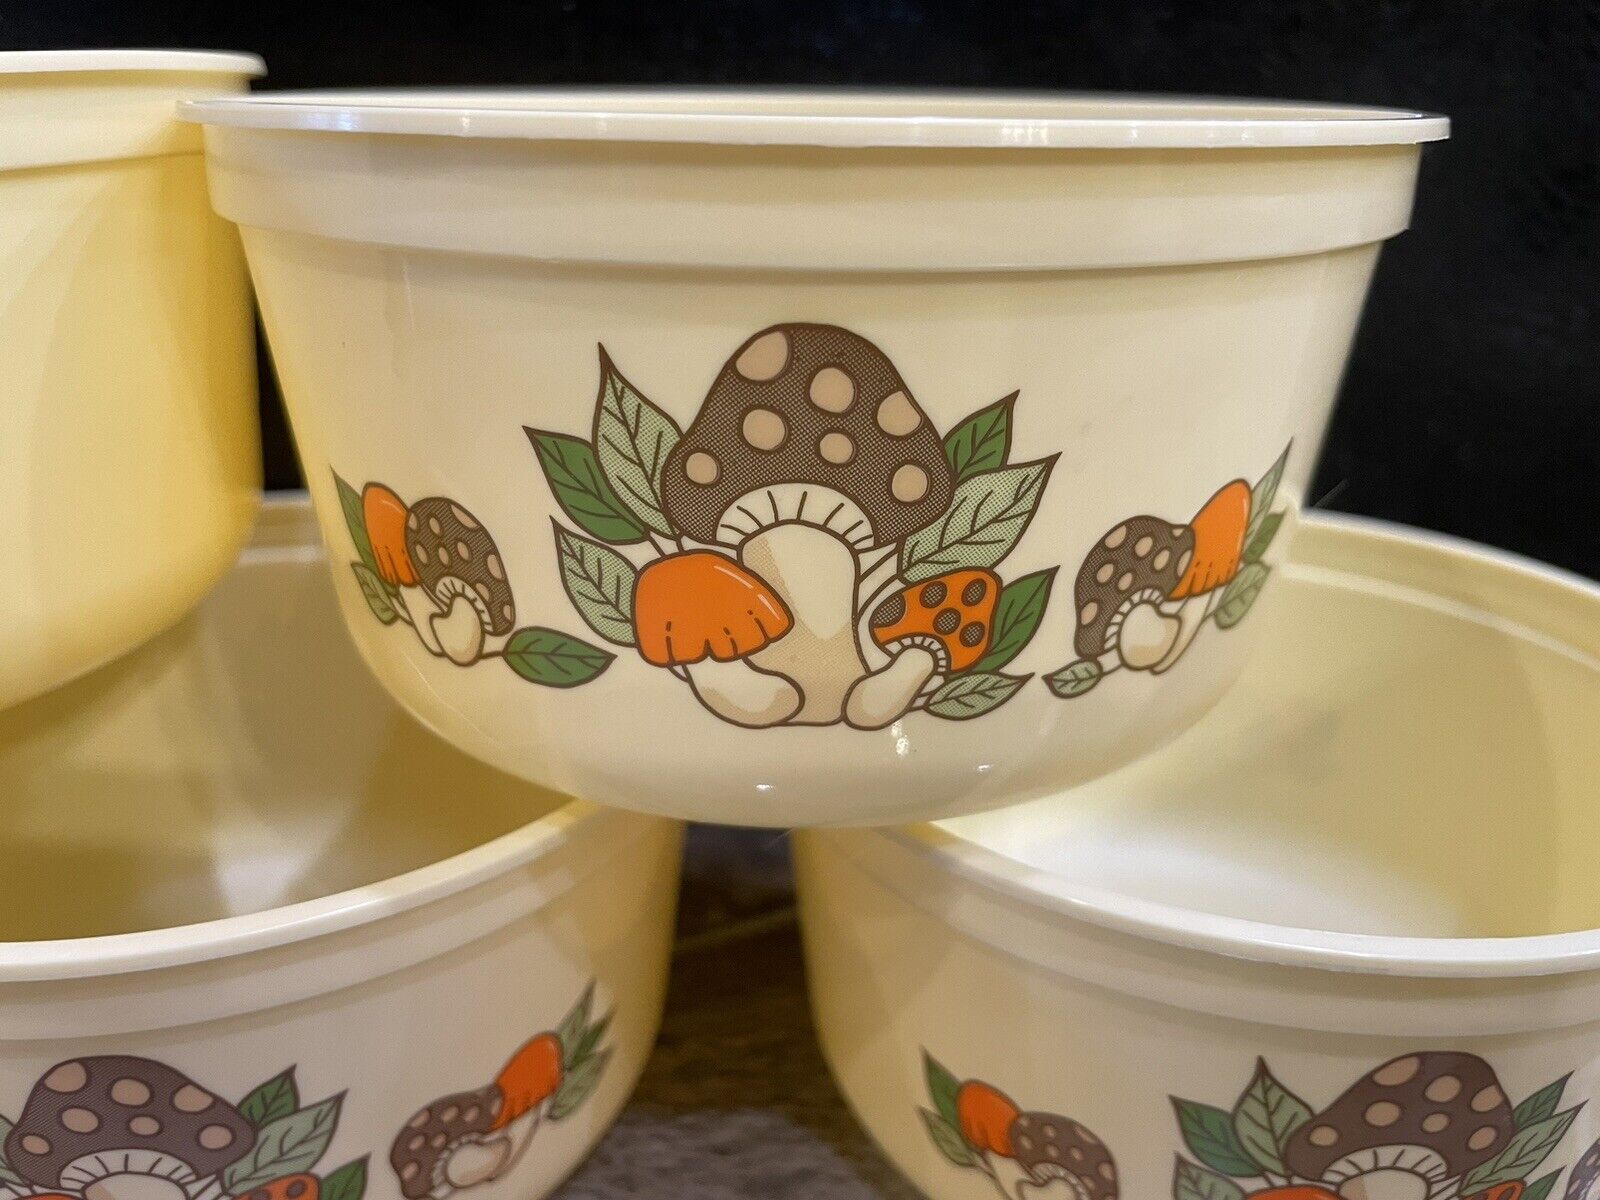 5 Vintage PLASTIC Margarine Butter Bowls NU MAID PARKAY Mushrooms CEREAL